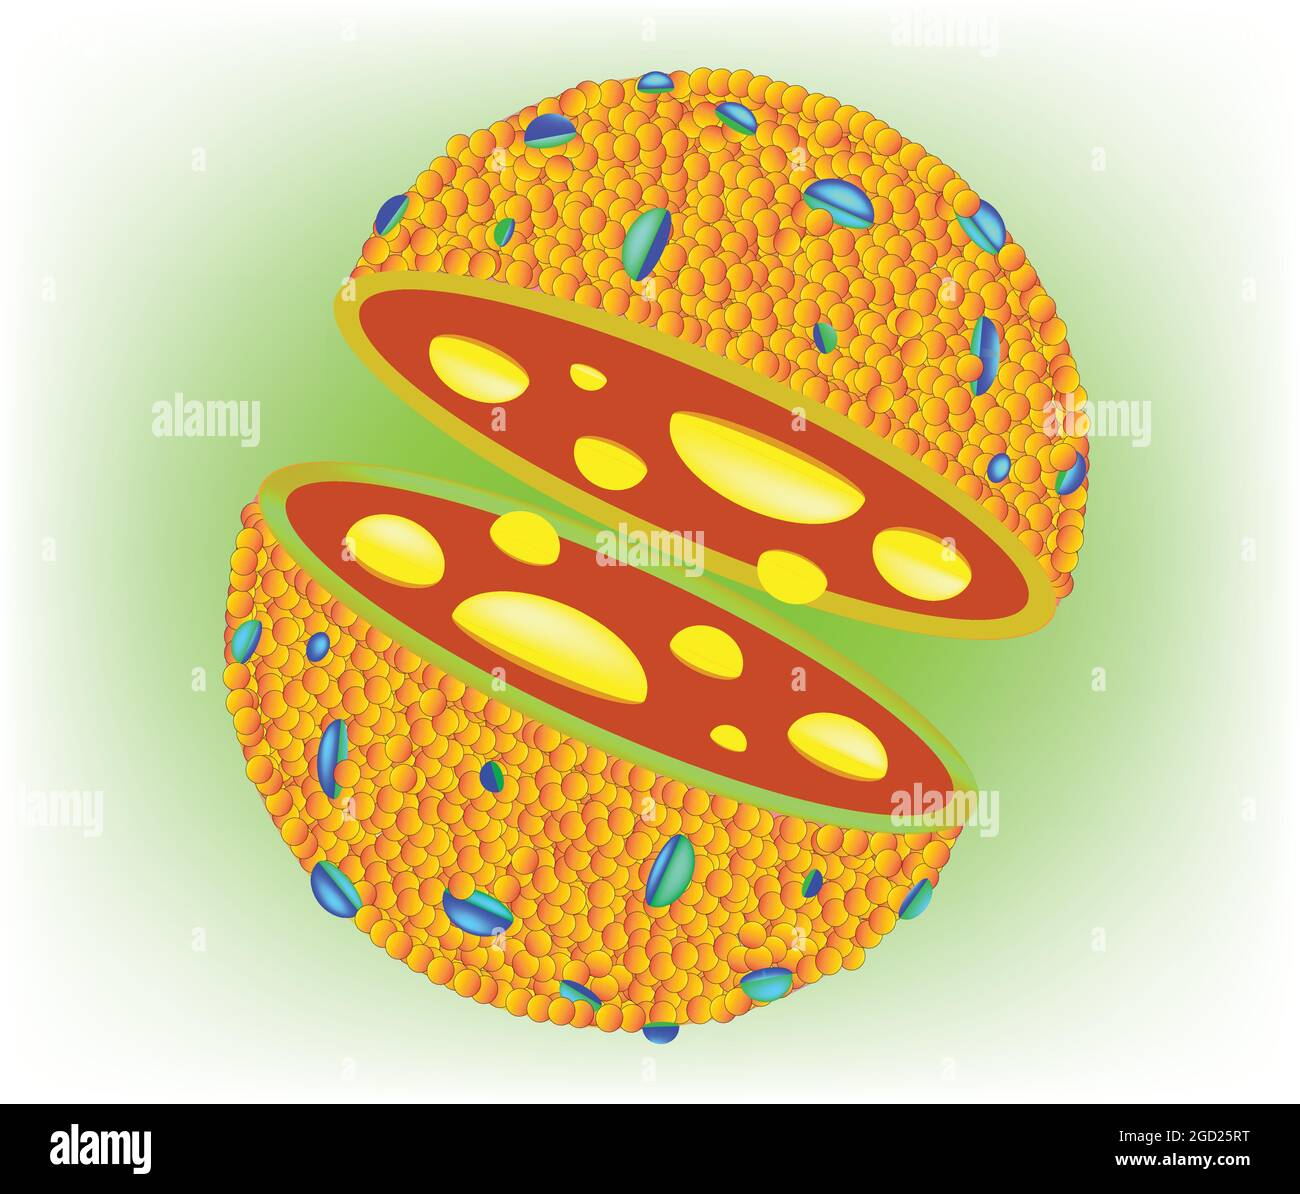 Anatomia biologica del lisosoma, struttura del lisosoma cellulare con doppio strato di fosfolipidi, struttura del lisosoma Illustrazione Vettoriale